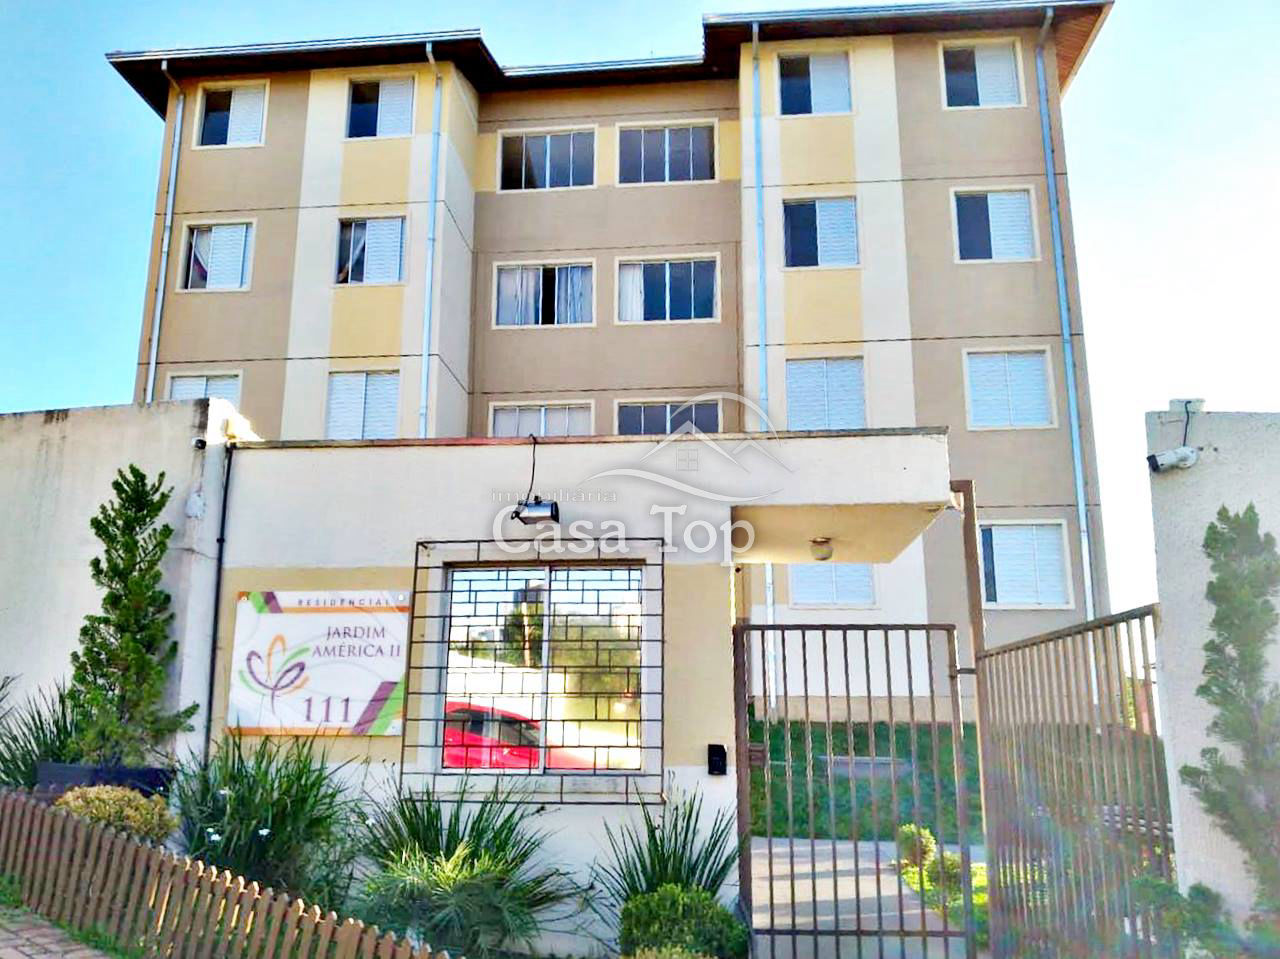 Apartamento à venda Condomínio Jardim América II - Vila Estrela